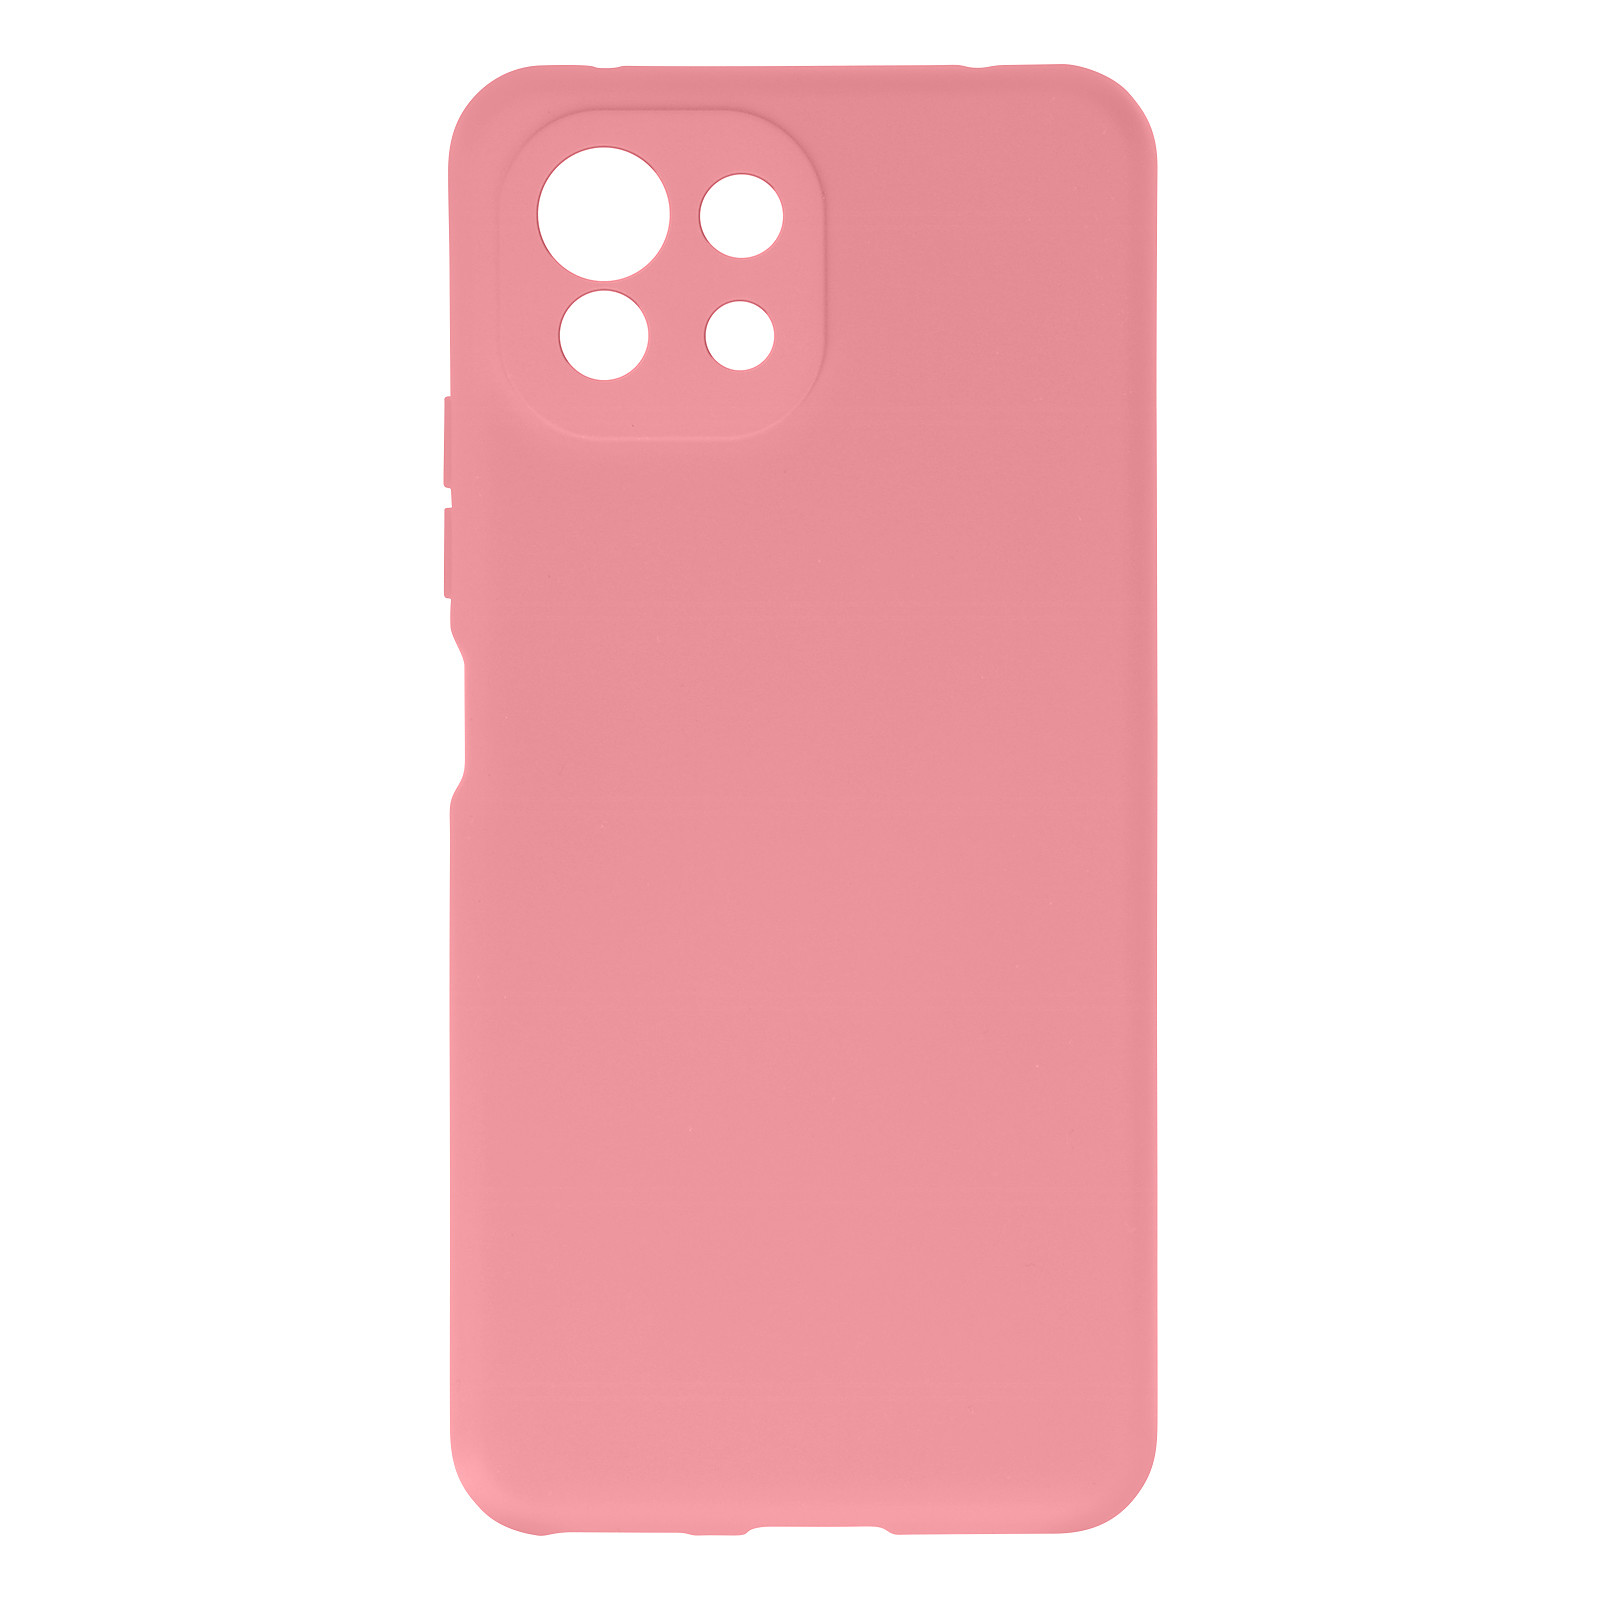 Avizar Coque pour Xiaomi Mi 11 Lite Silicone Semi-rigide Finition Soft Touch Fine Rose pale - Coque telephone Avizar